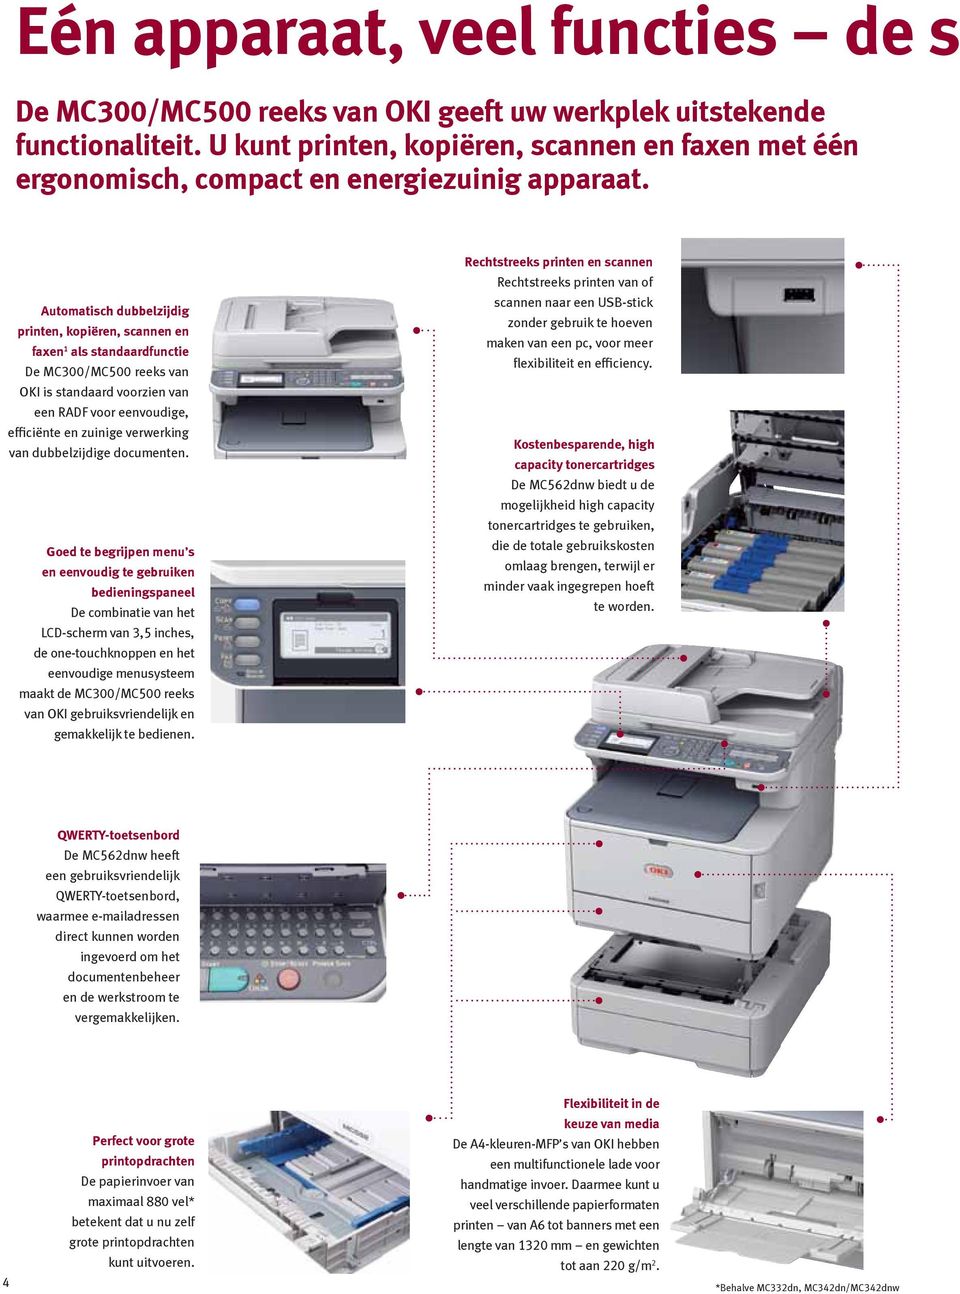 Automatisch dubbelzijdig printen, kopiëren, scannen en faxen 1 als standaardfunctie De MC300/MC500 reeks van OKI is standaard voorzien van een RADF voor eenvoudige, efficiënte en zuinige verwerking